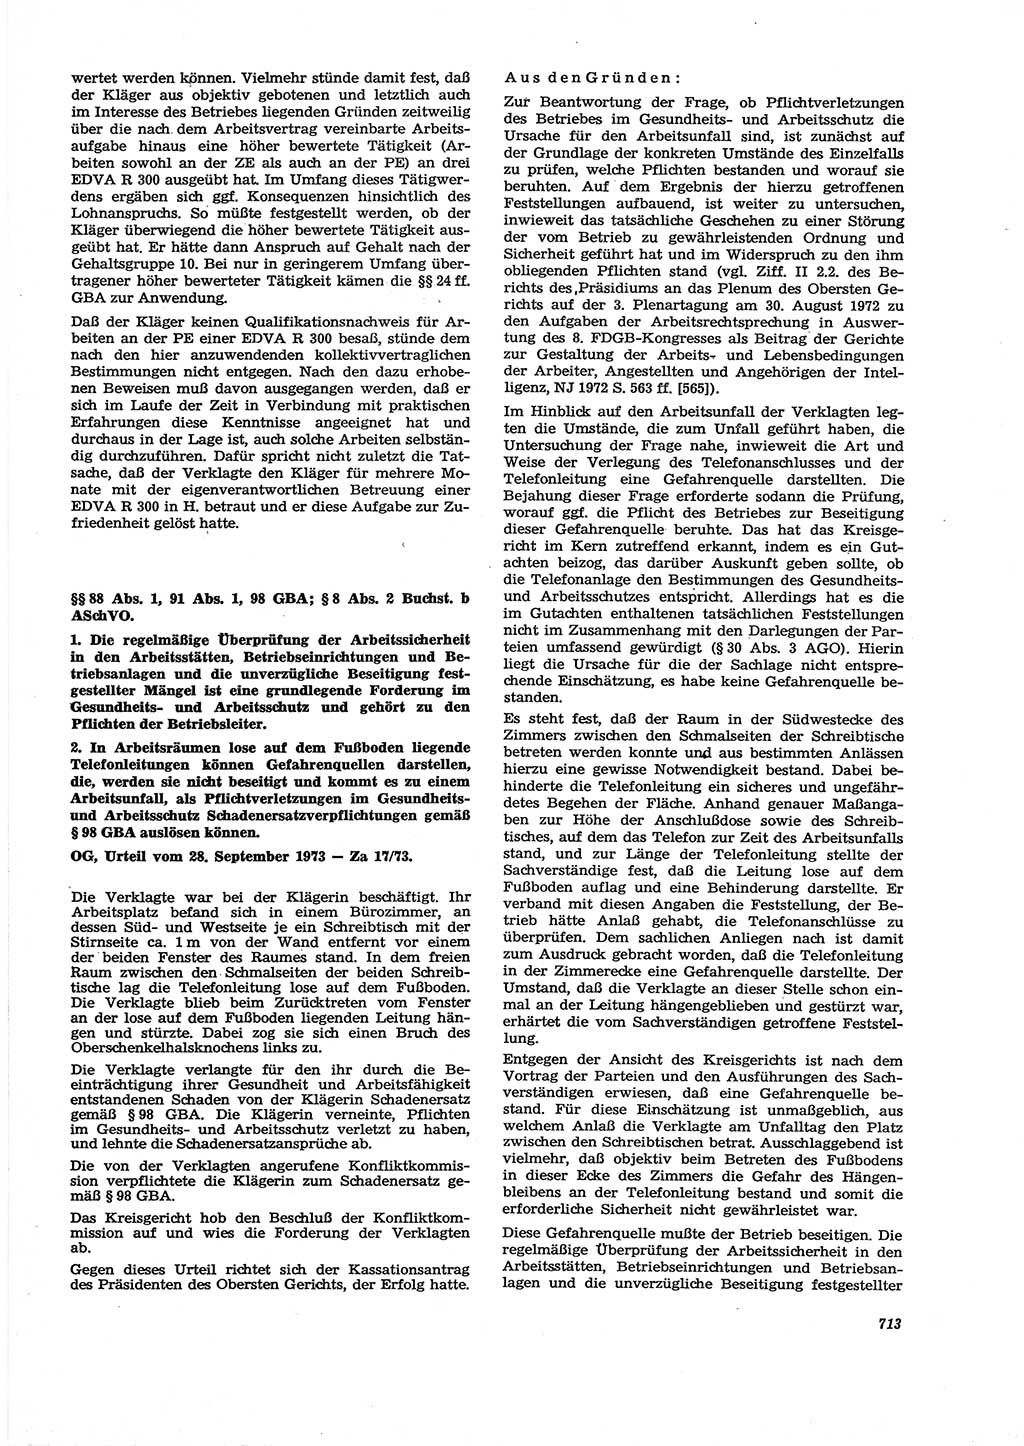 Neue Justiz (NJ), Zeitschrift für Recht und Rechtswissenschaft [Deutsche Demokratische Republik (DDR)], 27. Jahrgang 1973, Seite 713 (NJ DDR 1973, S. 713)